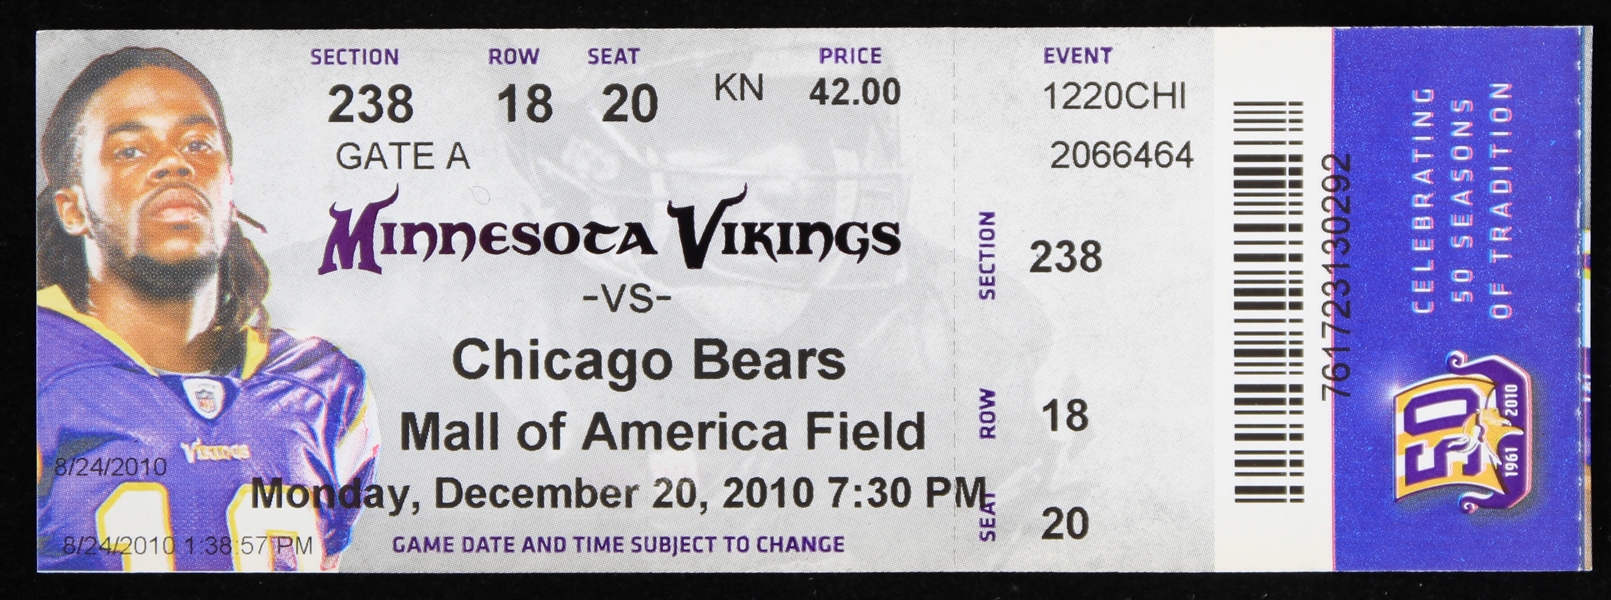 2010 (December 20) Brett Favre Minnesota Vikings Final Game Ticket